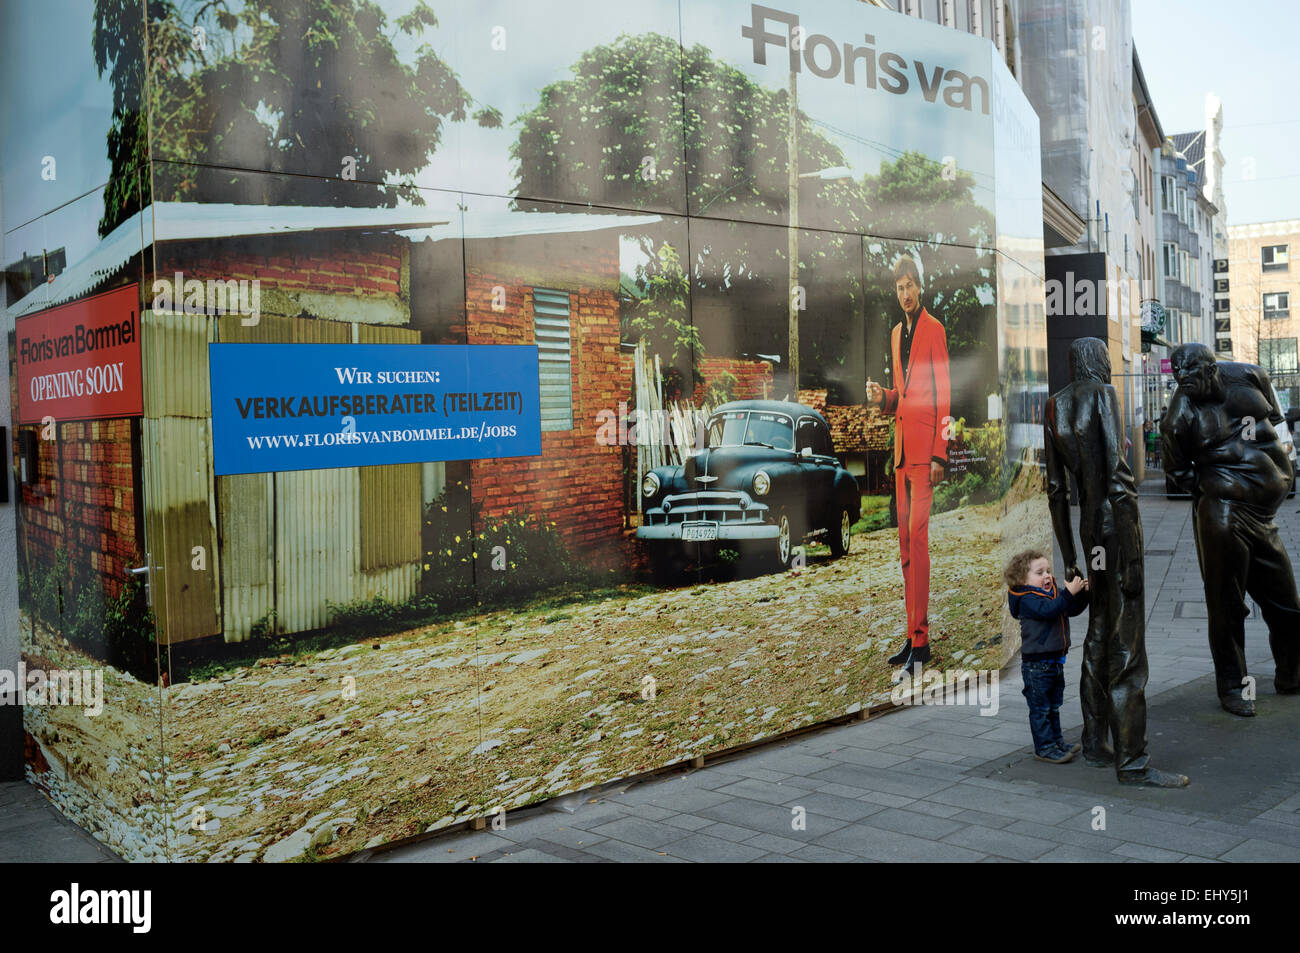 Floris Van Bommel store soon to be opening in Dusseldorf Germany Stock  Photo - Alamy